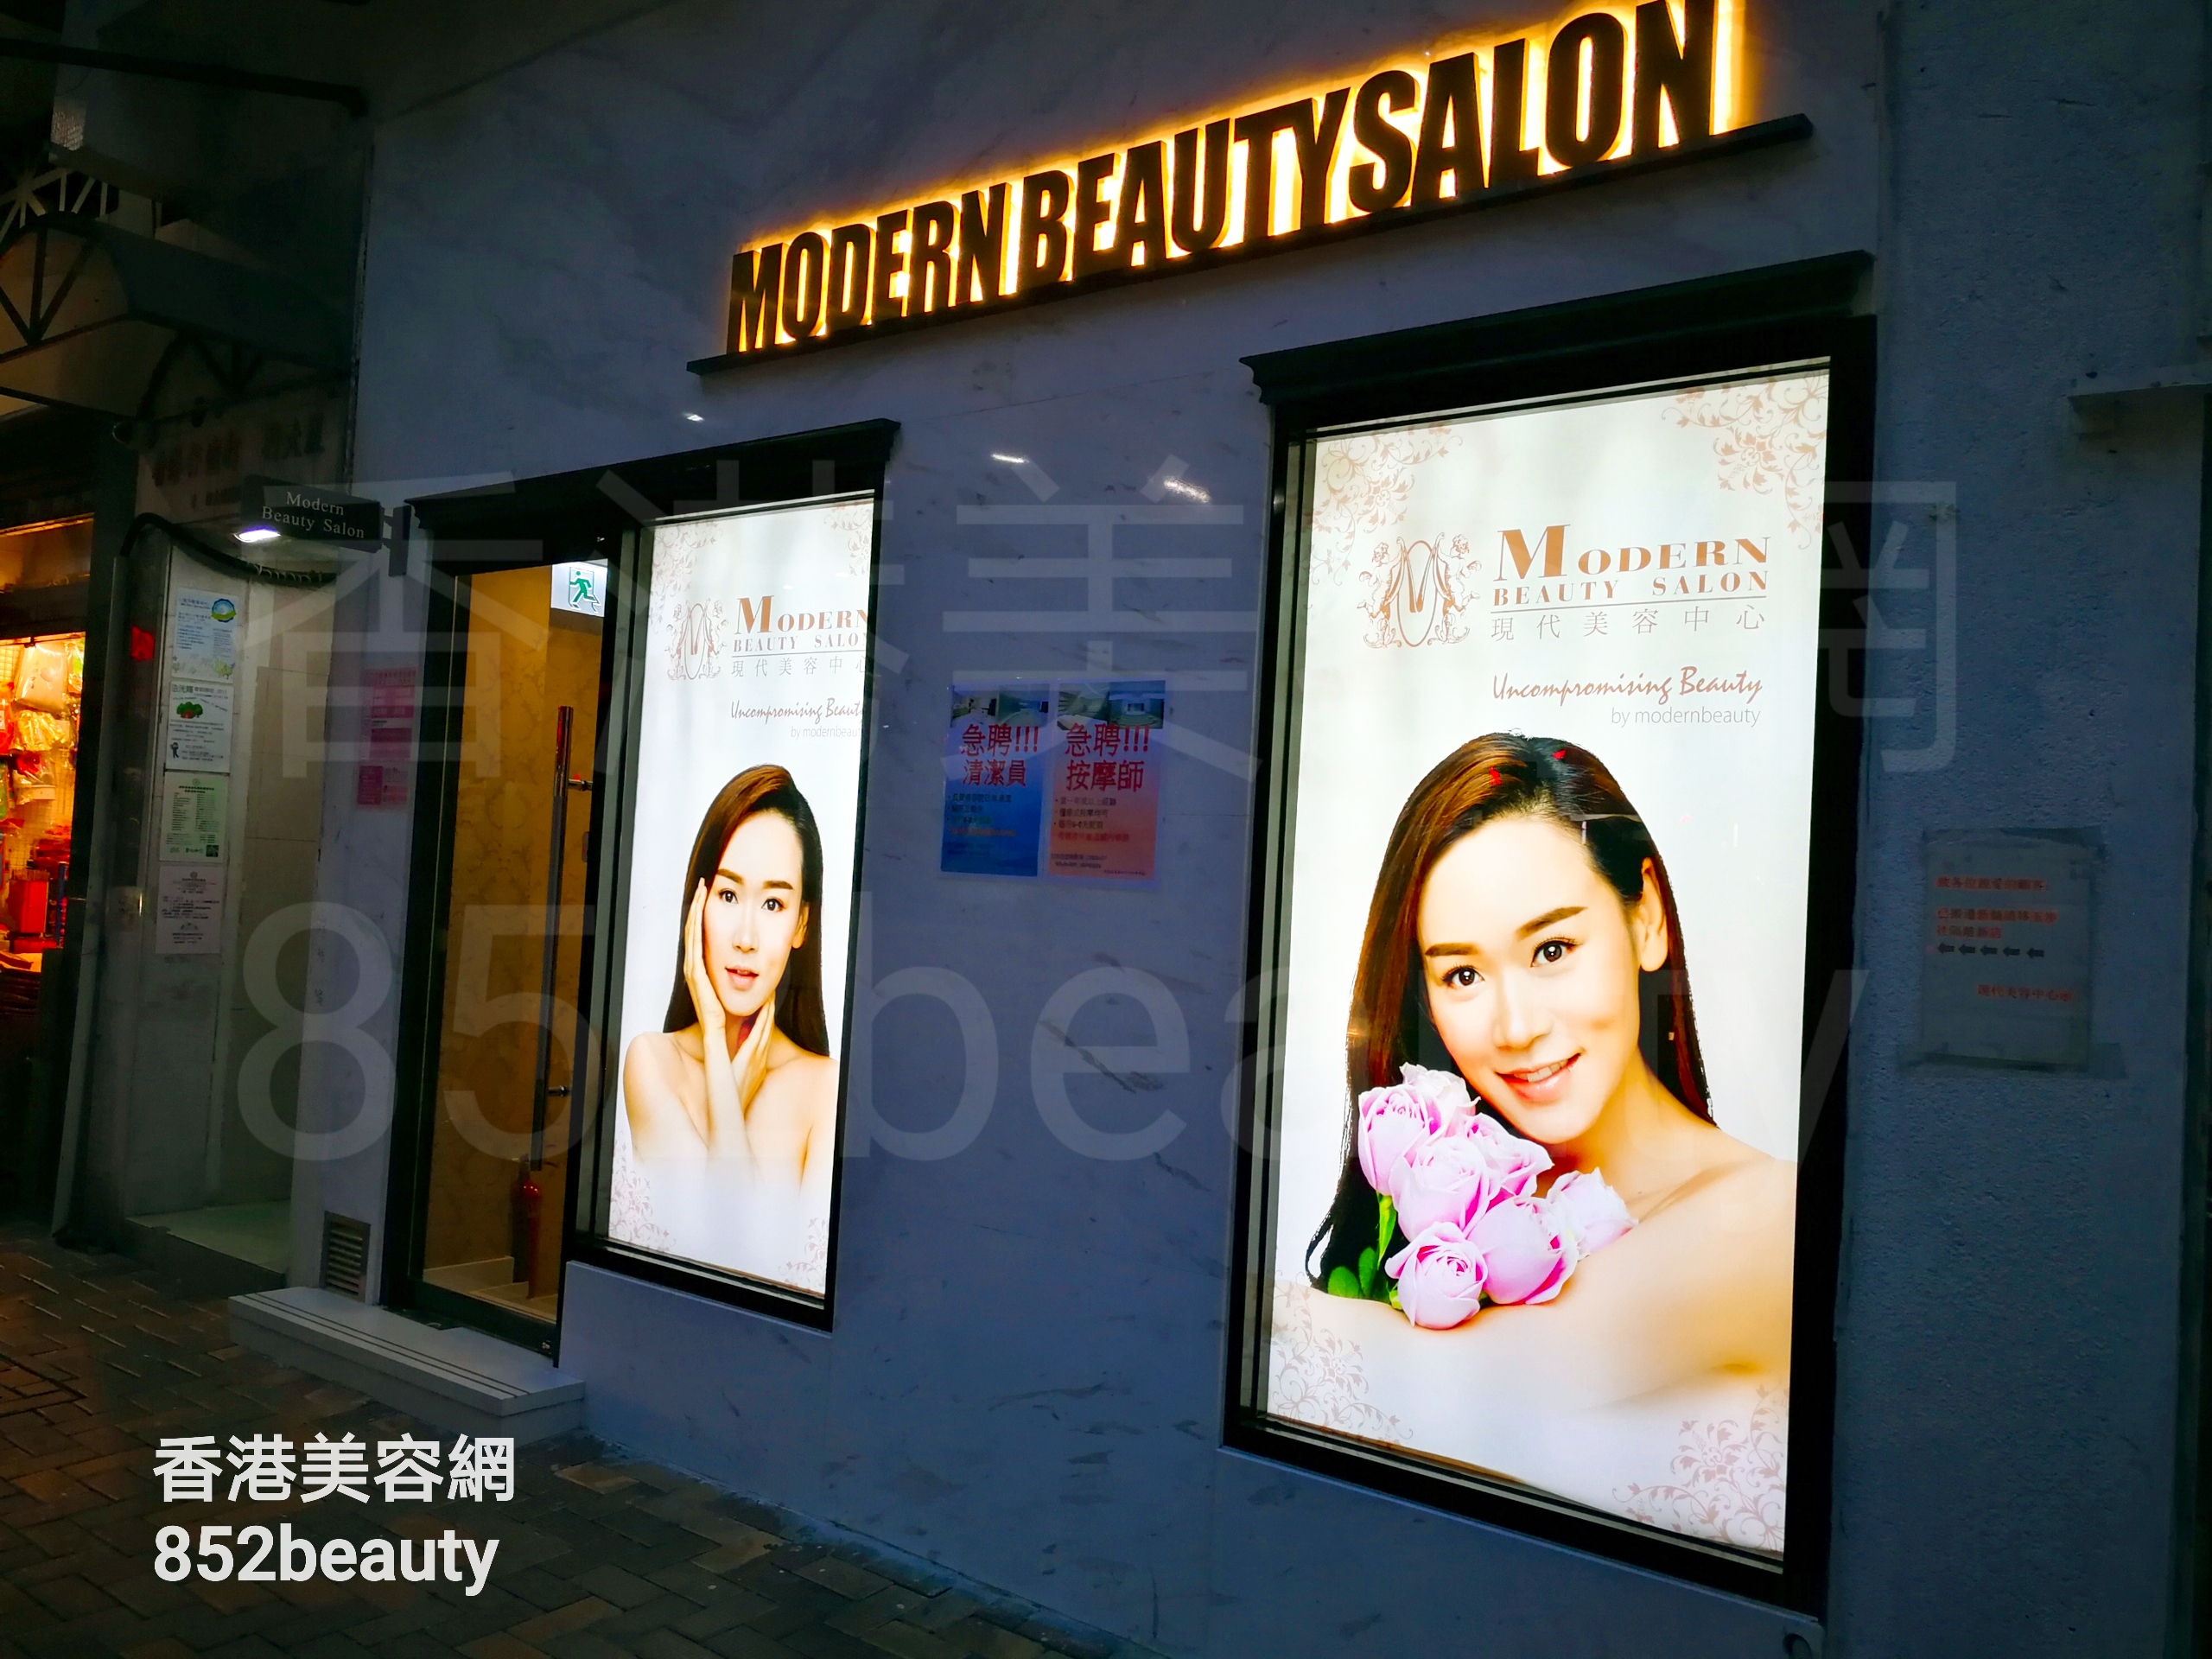 香港美容網 Hong Kong Beauty Salon 美容院 / 美容師: 現代美容中心 (香港仔店)